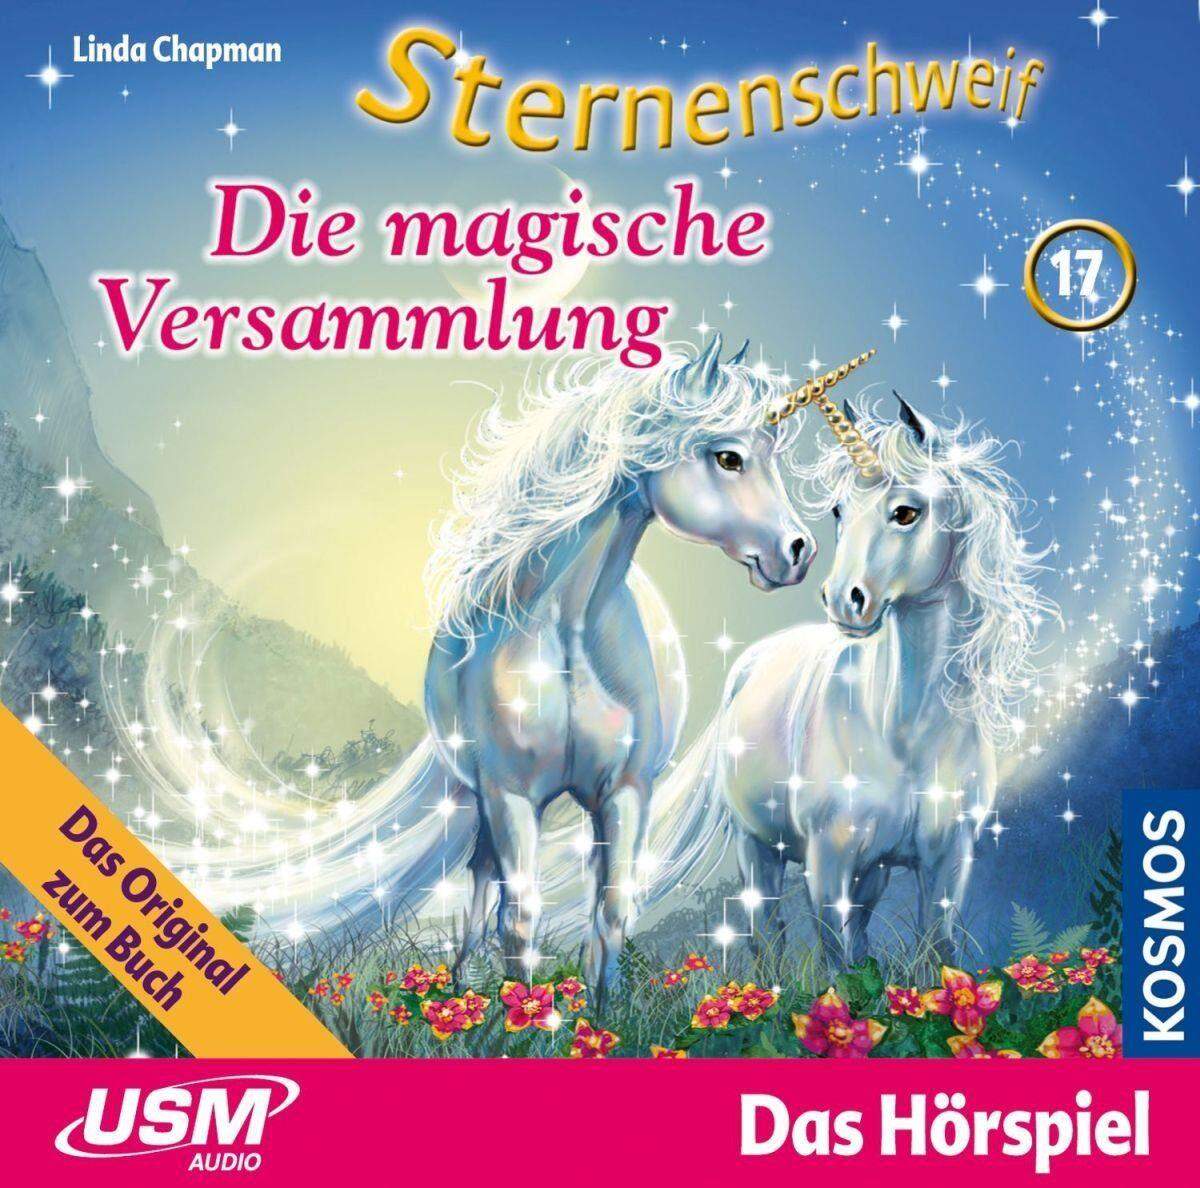 KOSMOS Hörspiel-CD Sternenschweif 17 Magische Versammlung